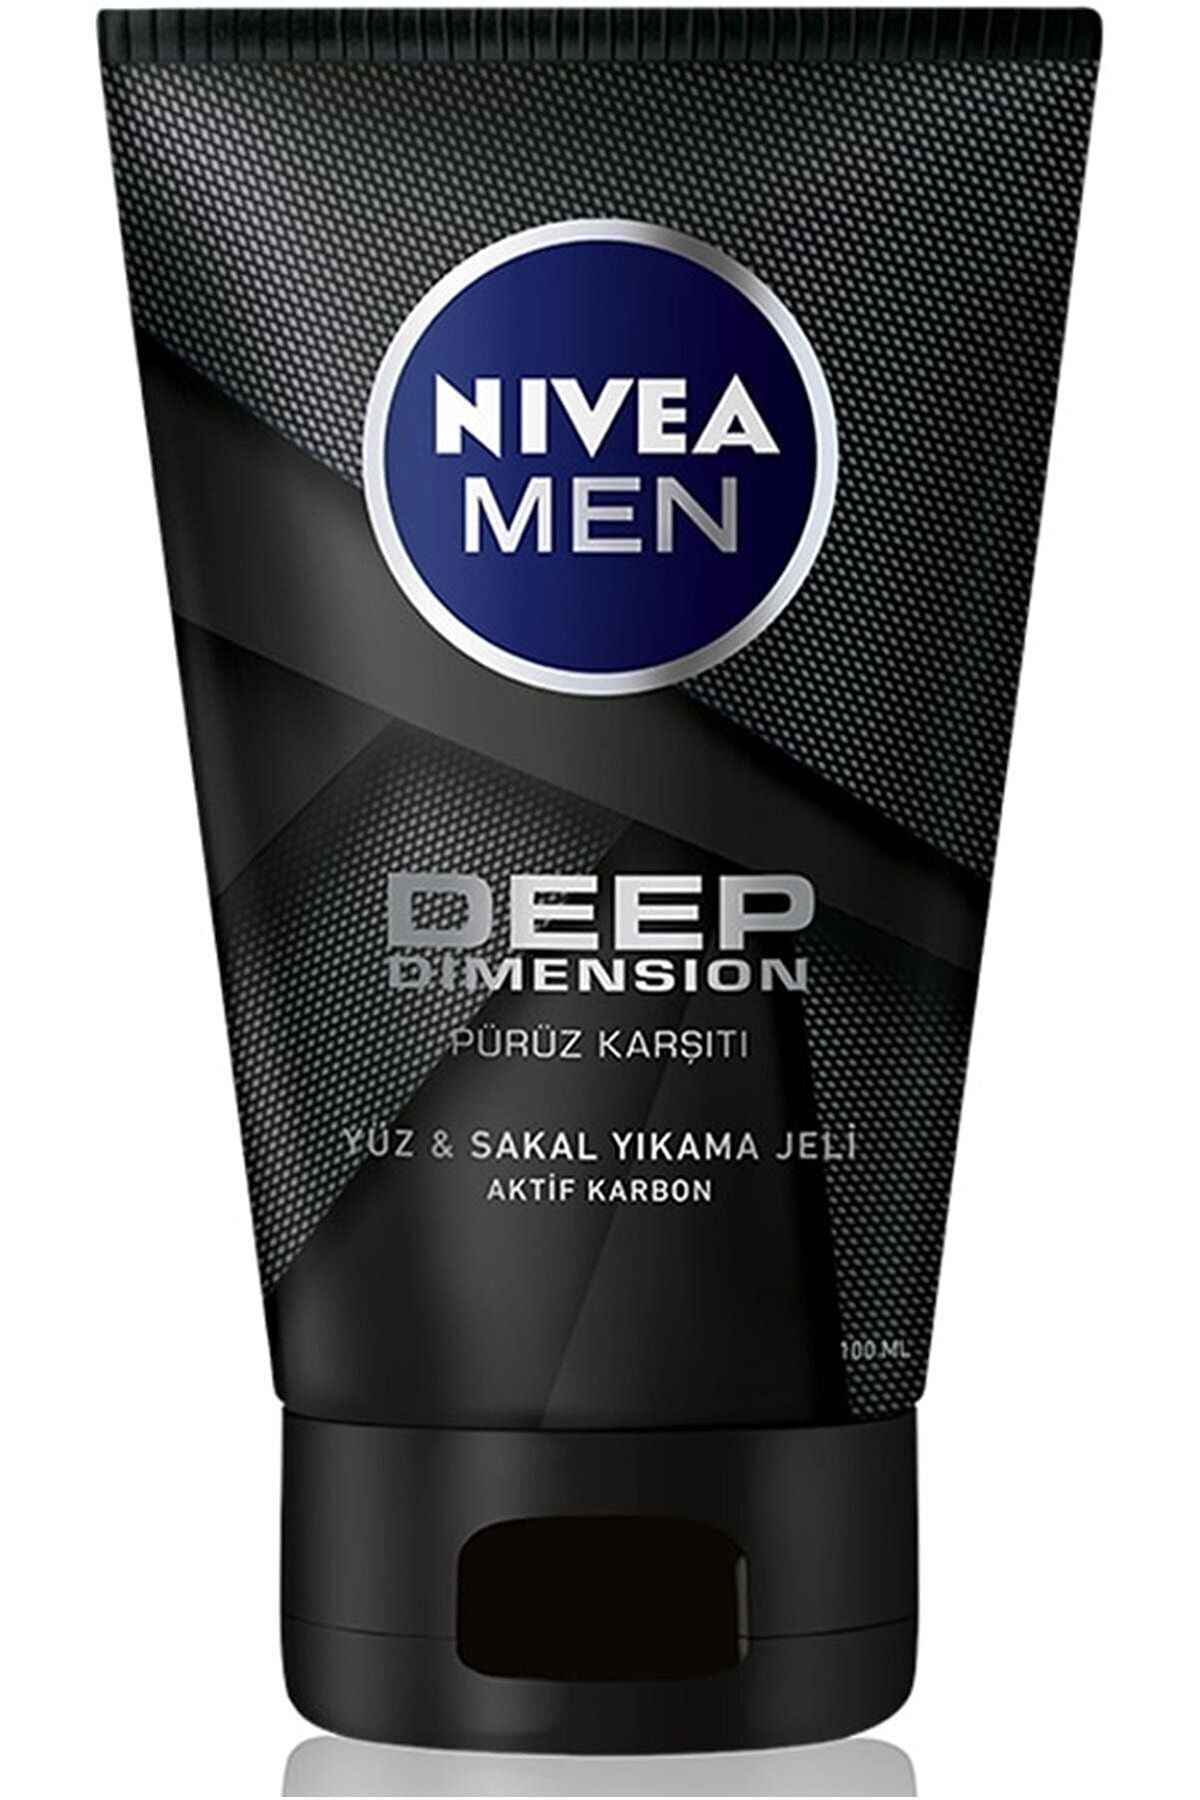 NIVEA Men Deep Pürüz Karşıtı Arındırıcı-temizleyici Yüz  Sakal Temizleme Jeli 100ml